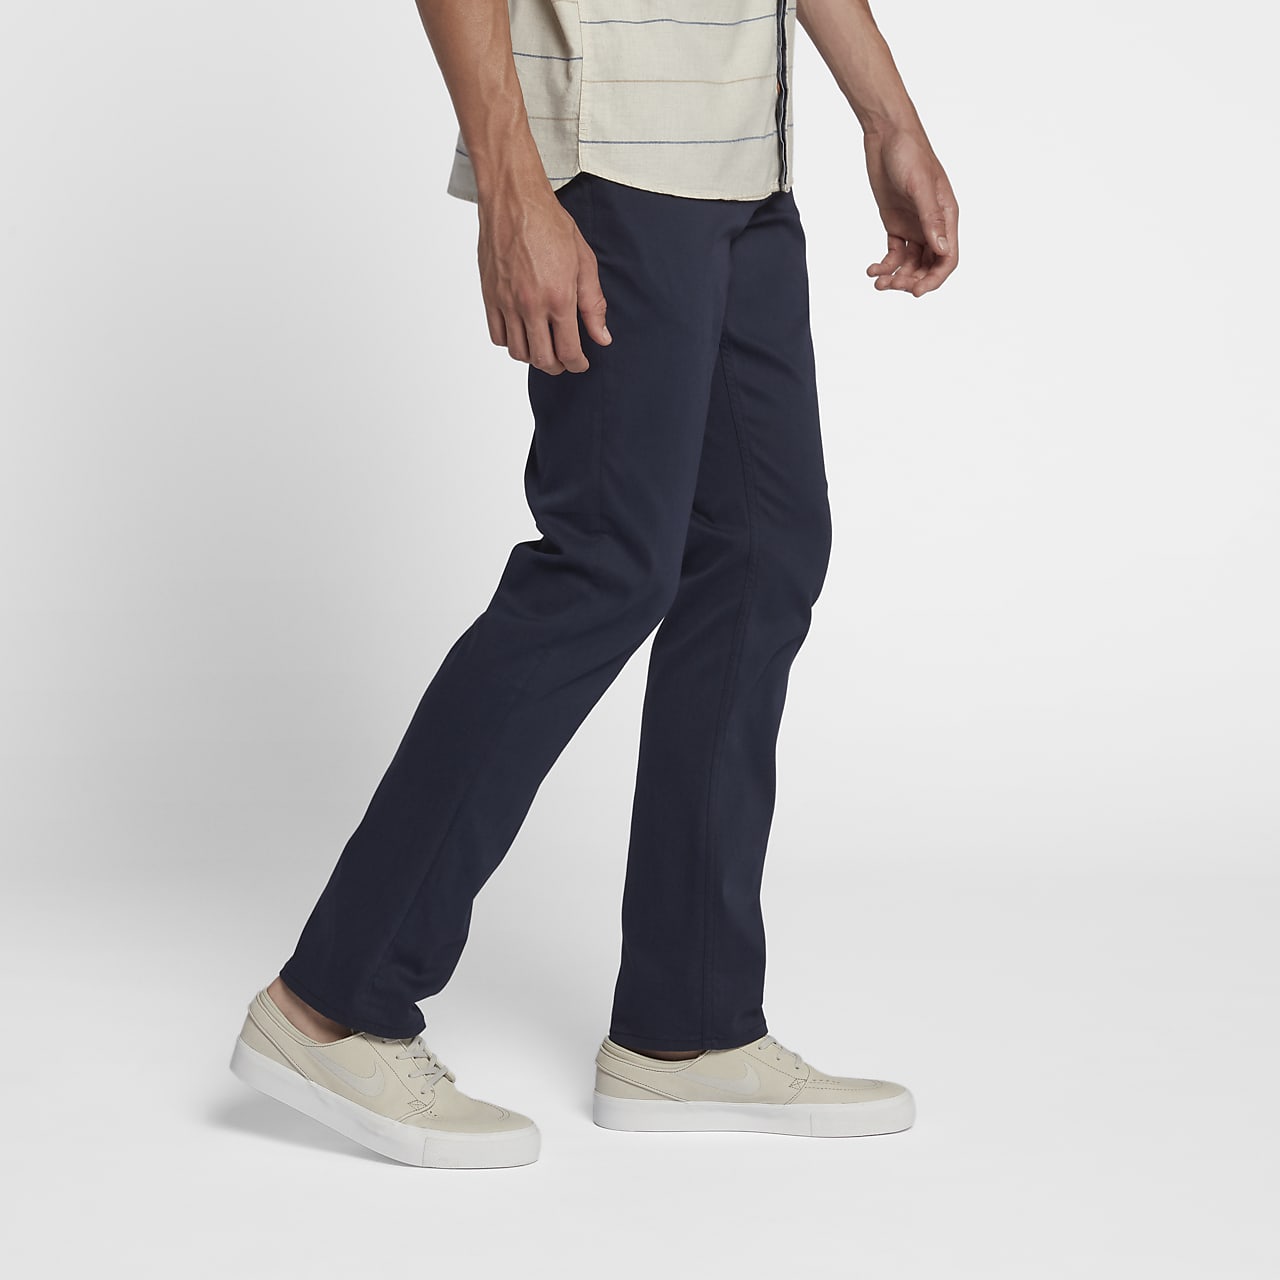 Hurley Dri-FIT Worker Men's Pants. Nike.com